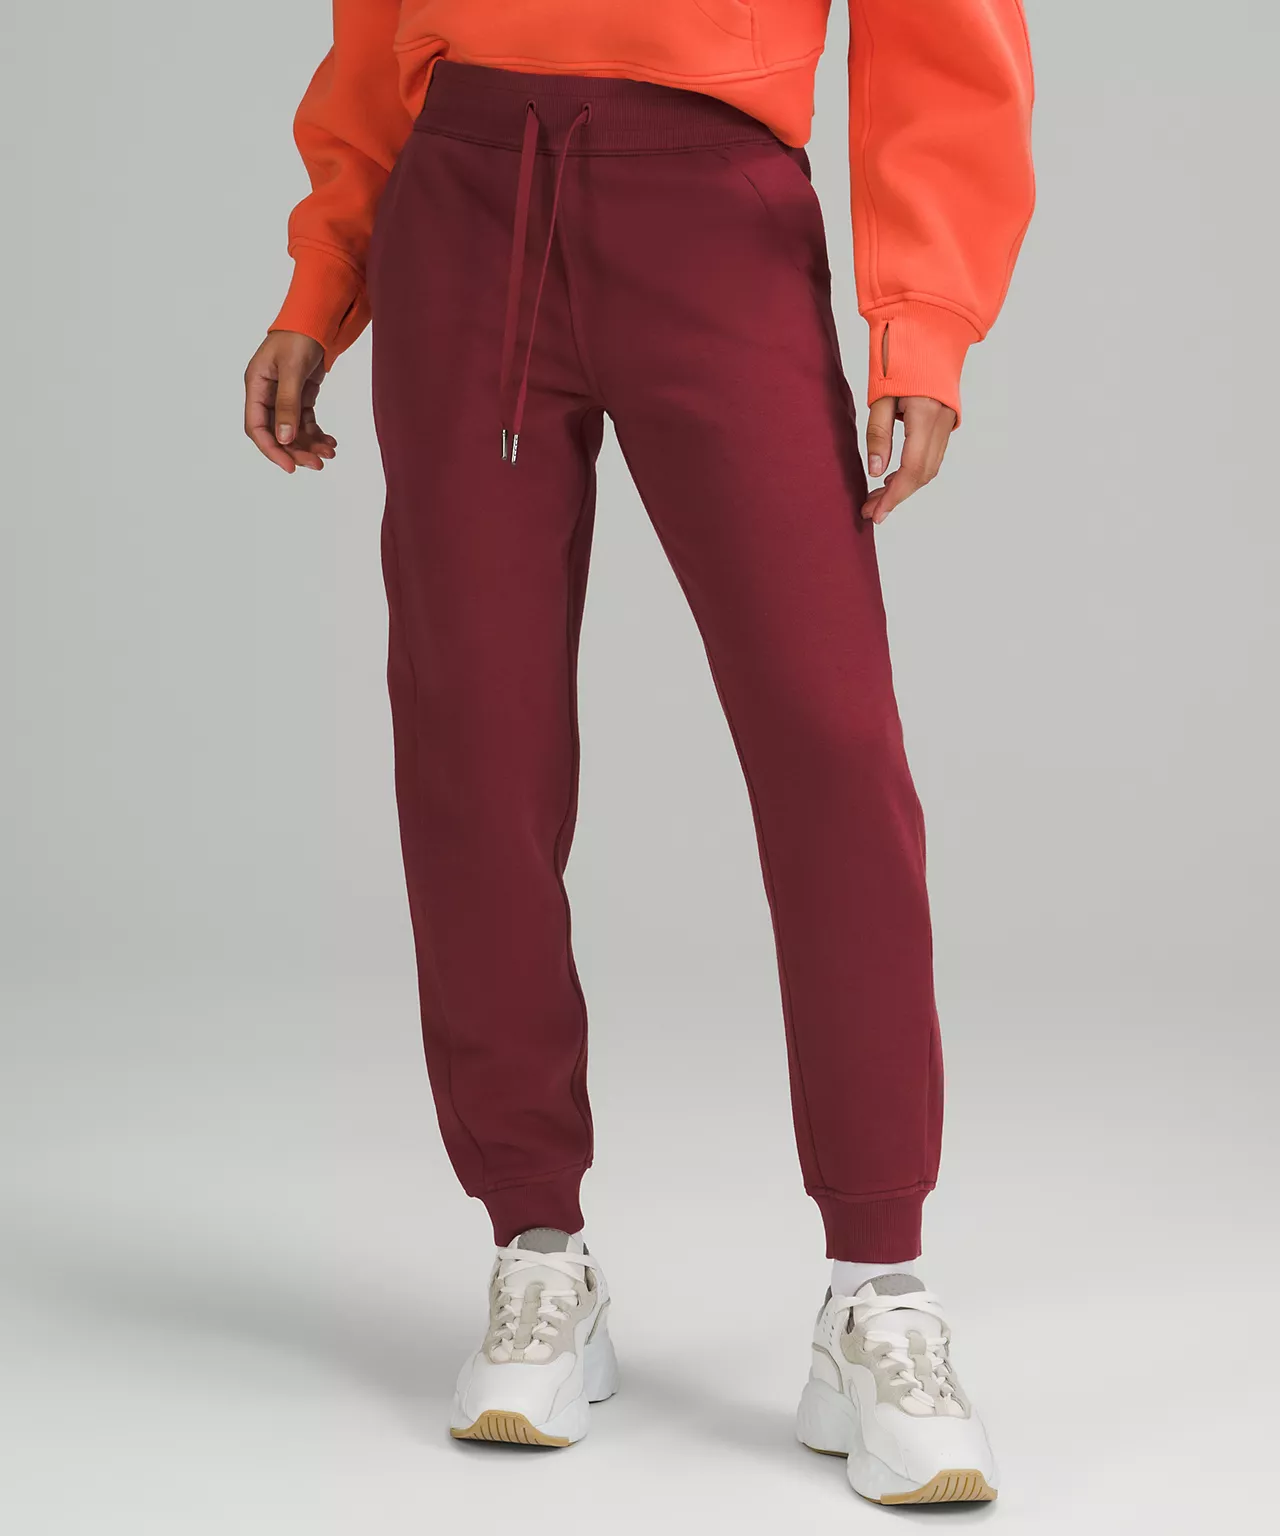 lululemon viral items:groove pants & define jacket